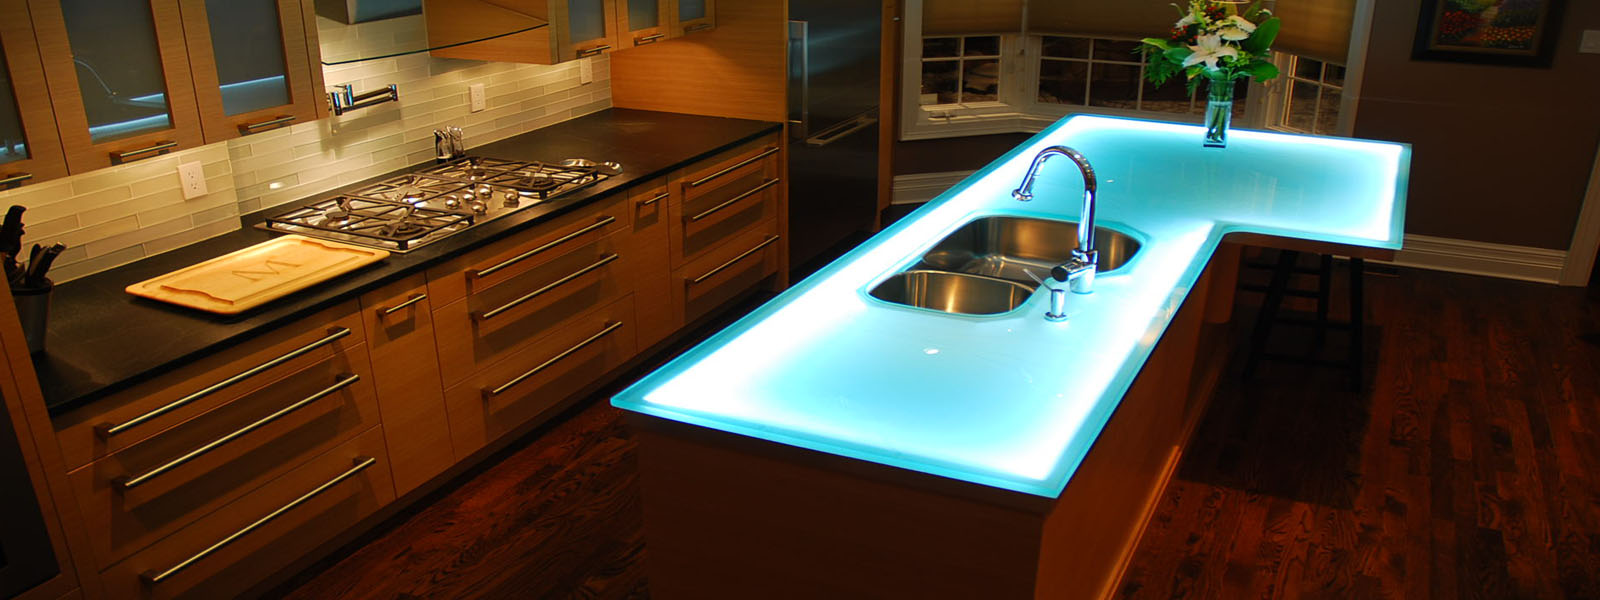 Kitchen-glass-countertops